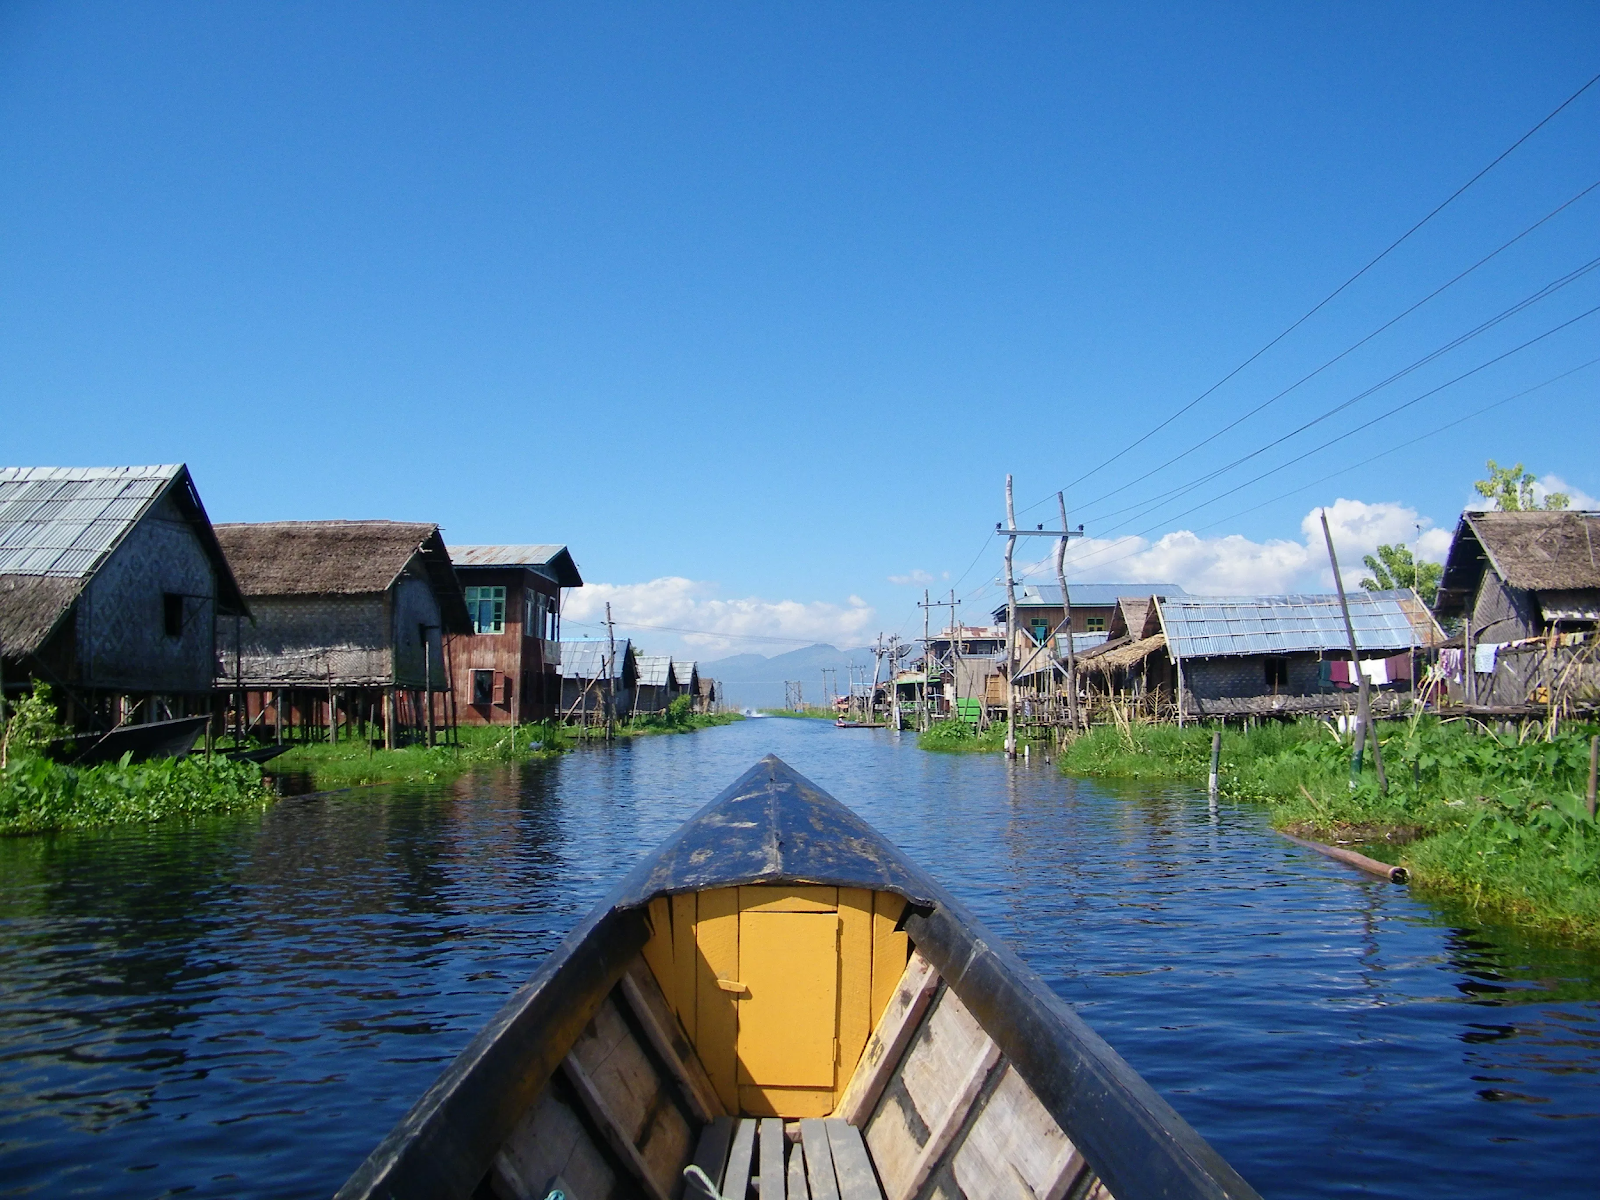 Hồ Inle - một trong những địa điểm nổi tiếng bạn nhất định đến khi dừng chân tại Myanmar